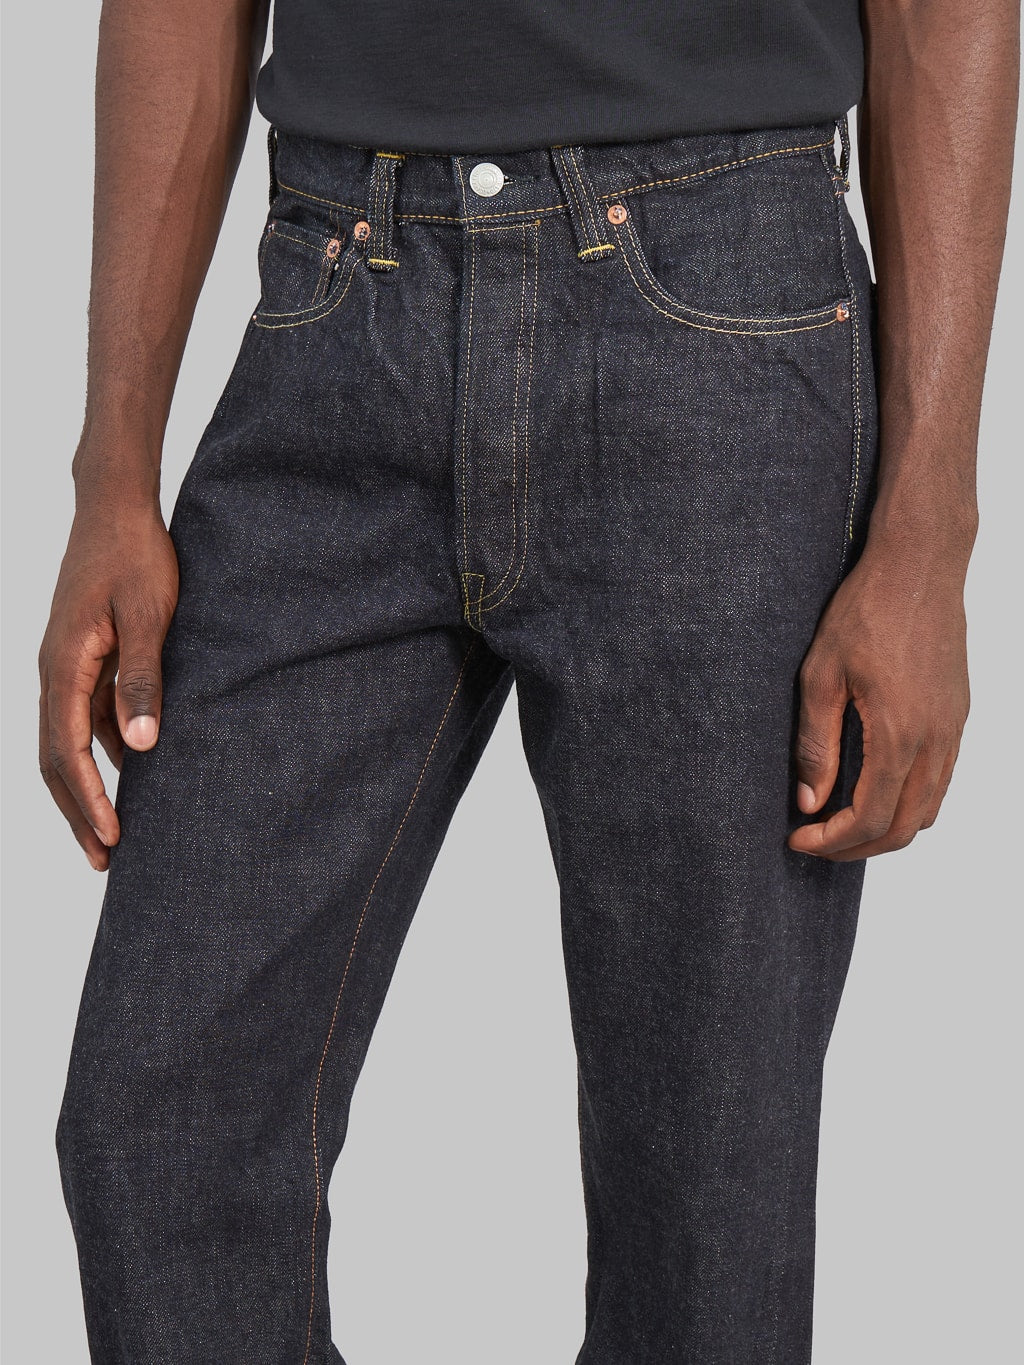 Fullcount 1101XXW regular Straight selvedge Jeans mid rise